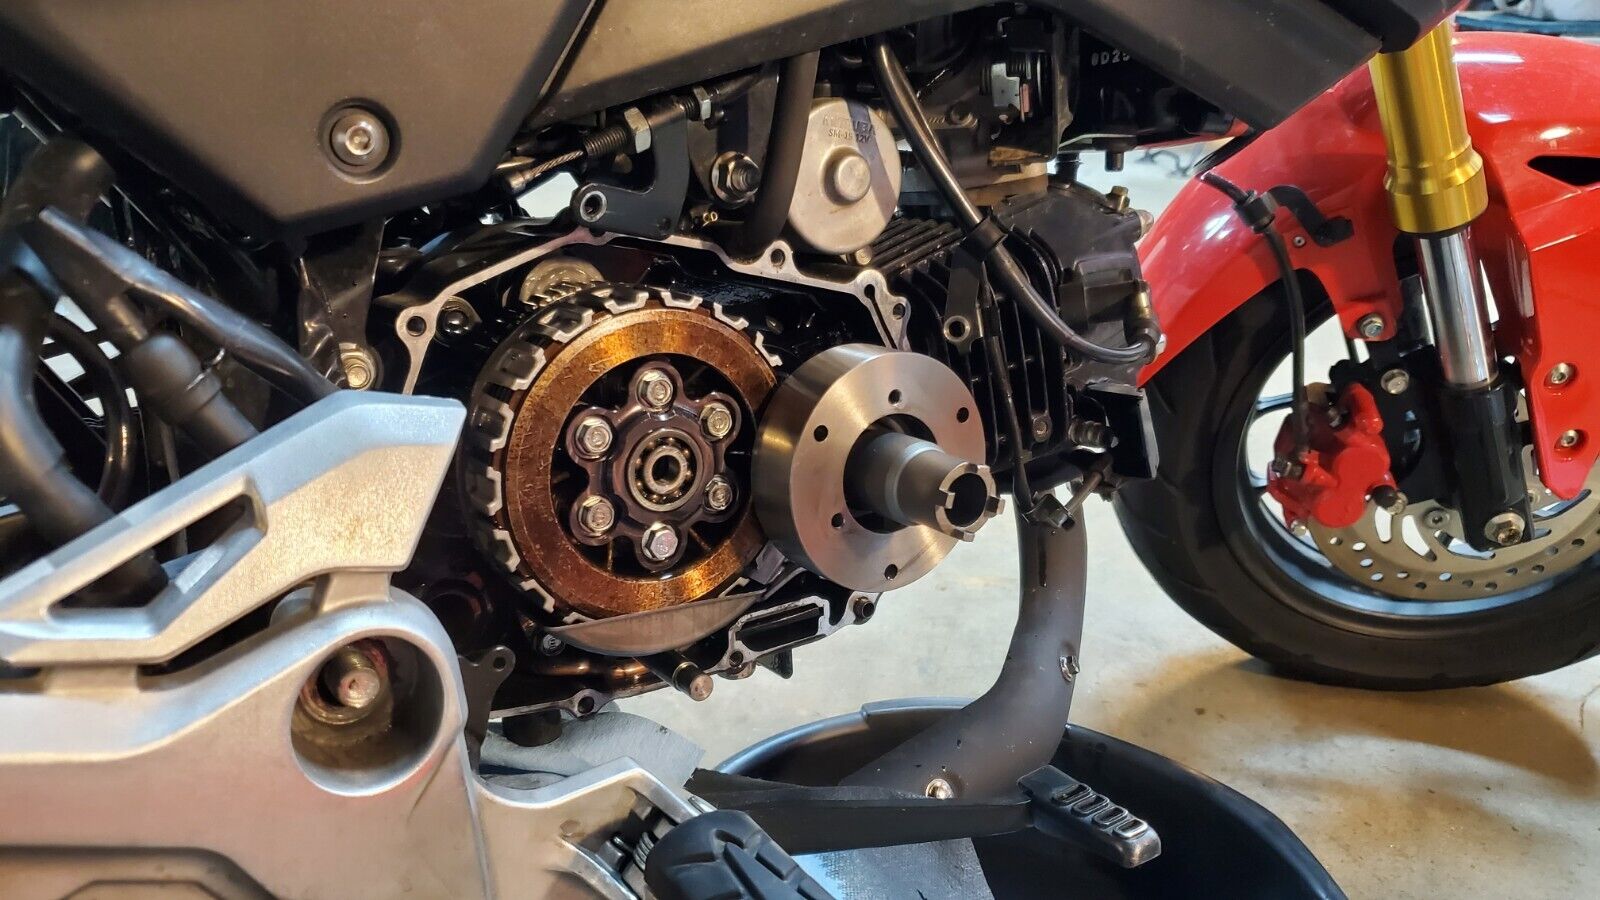 24mm 20mm Honda Grom MSX125 Oil Rotor Clutch Nut Locknut Socket Remover Tool